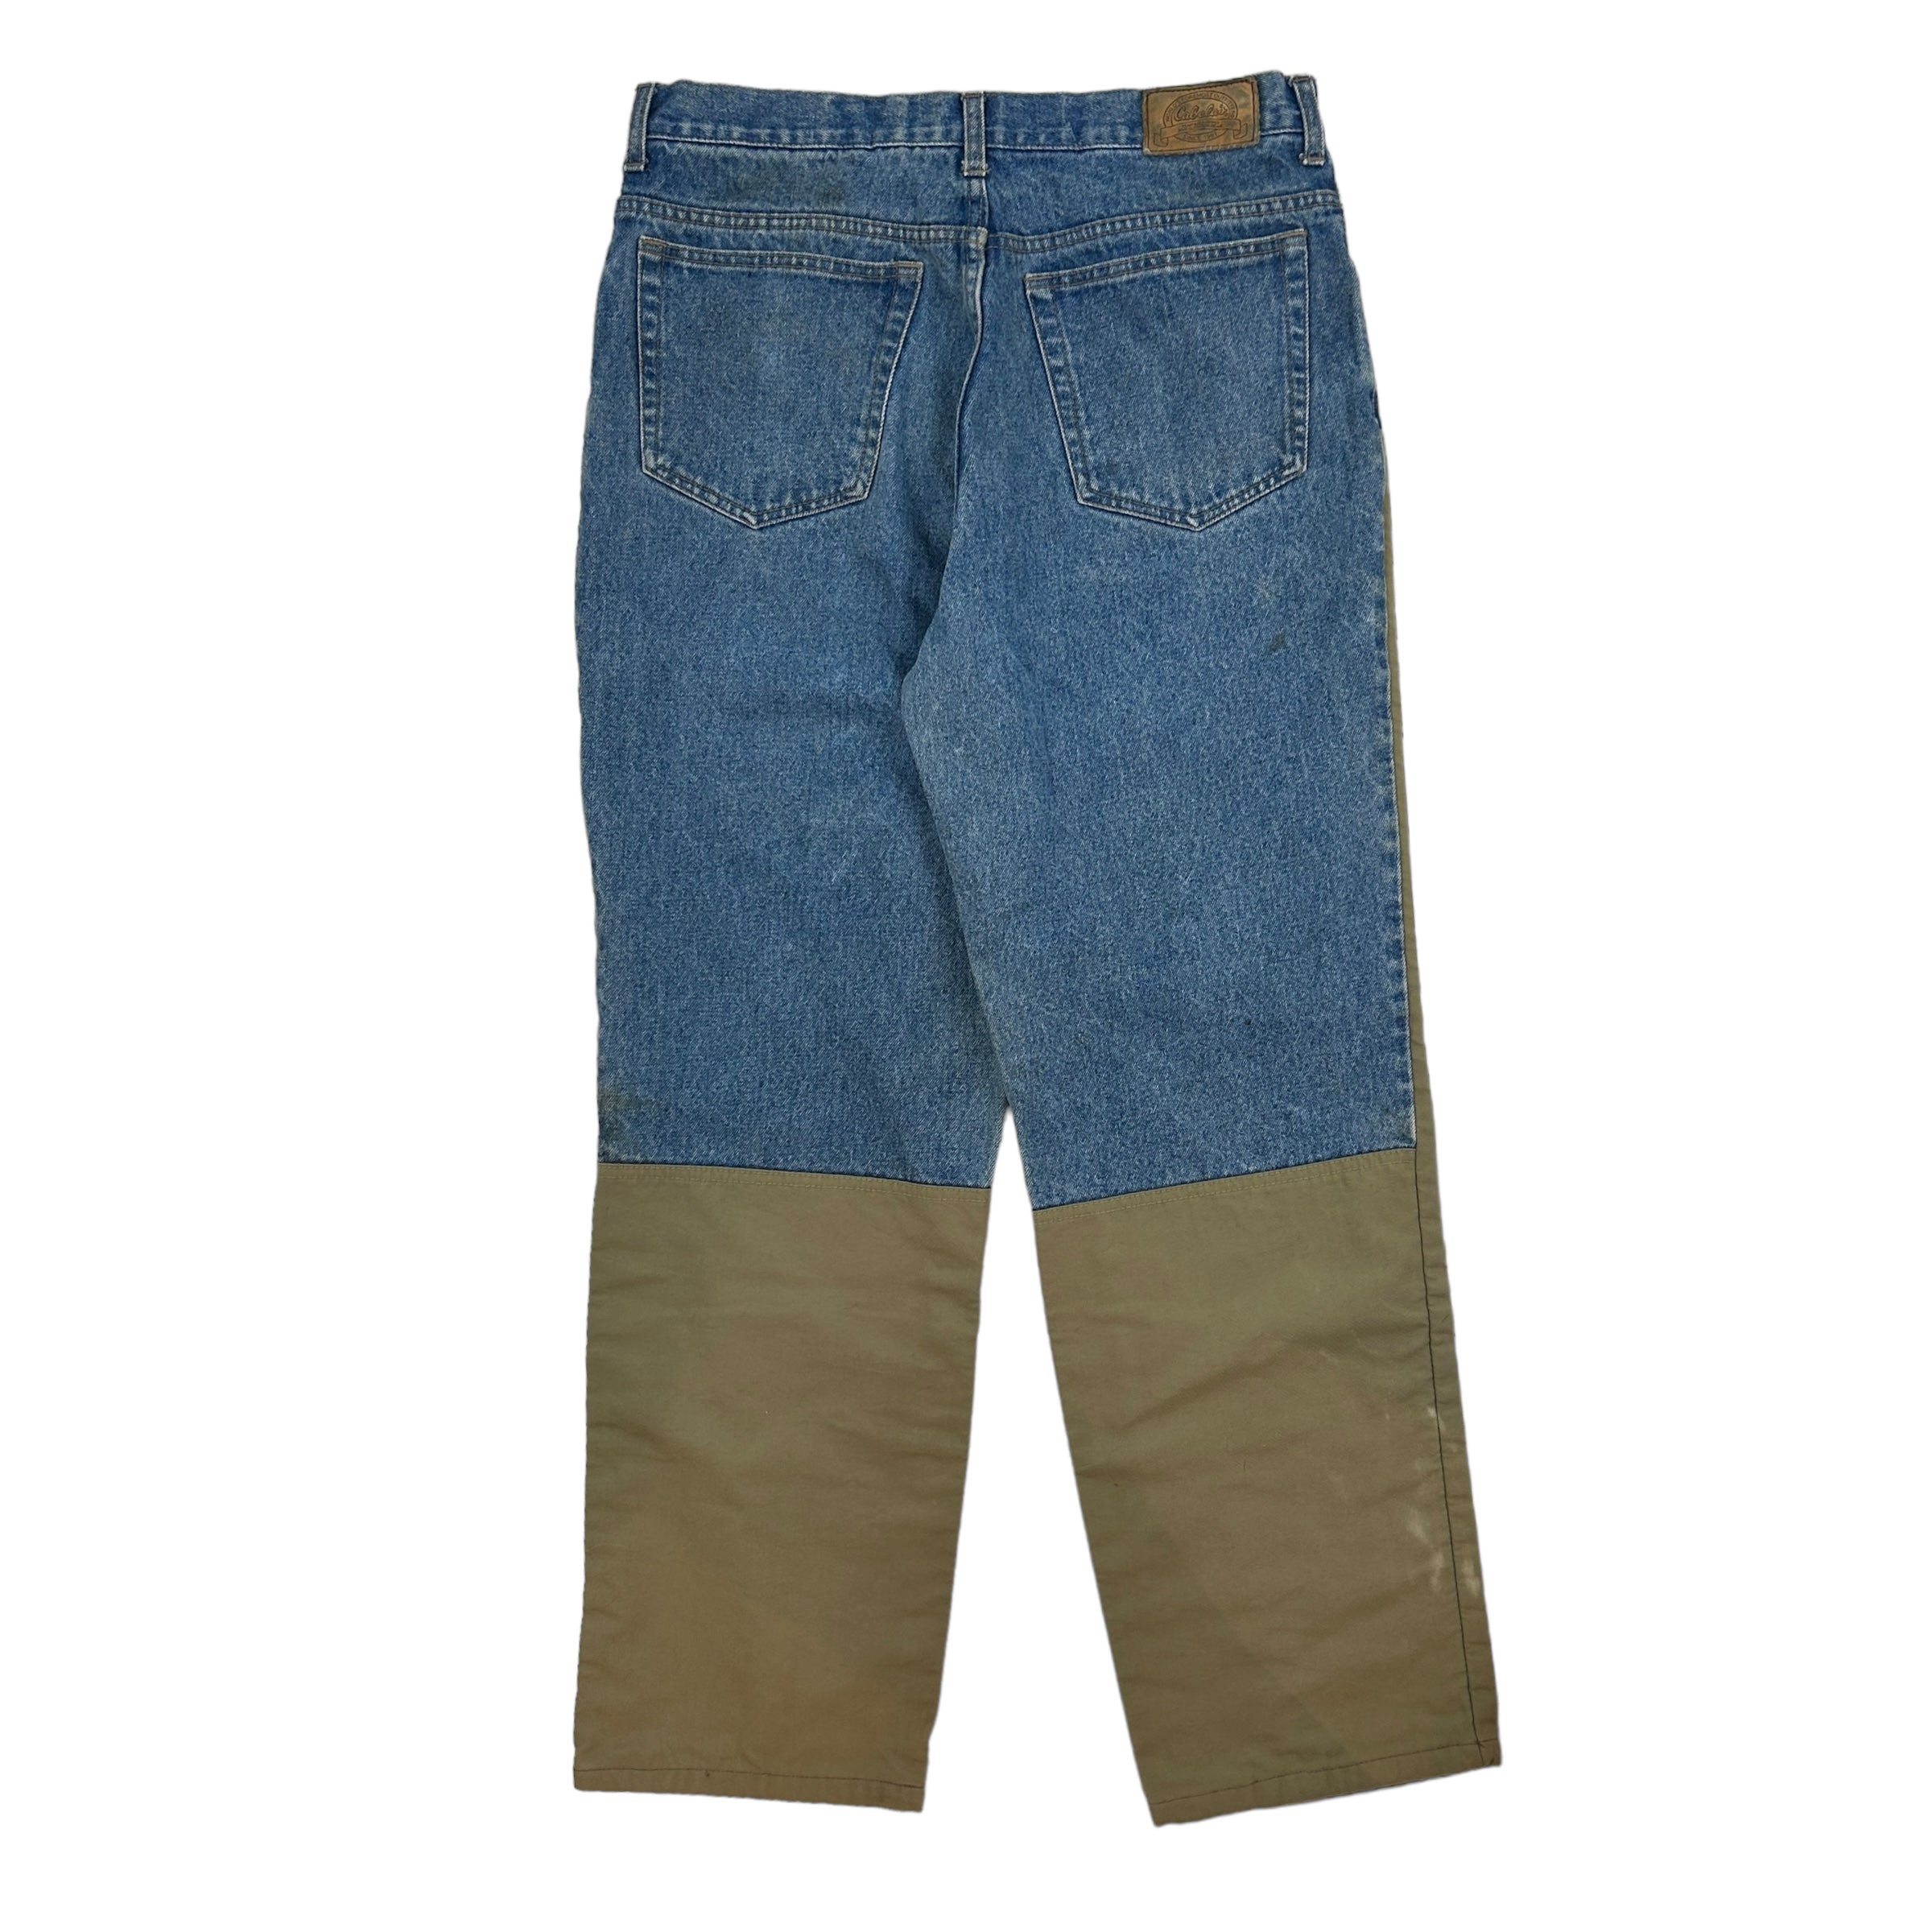 Vintage Cabelas Denim Work Pants